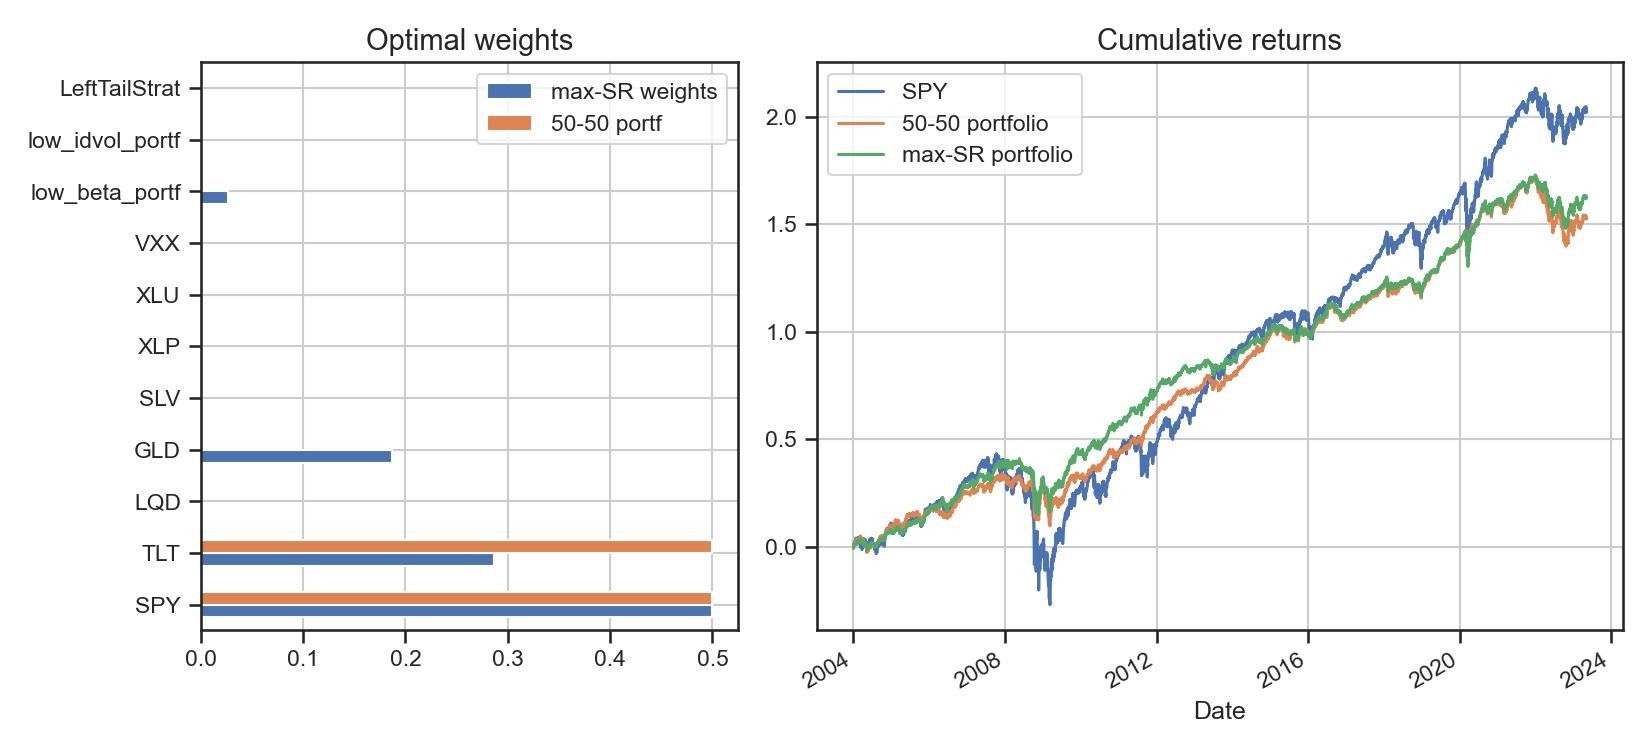 Optimal weights portfolio comparison